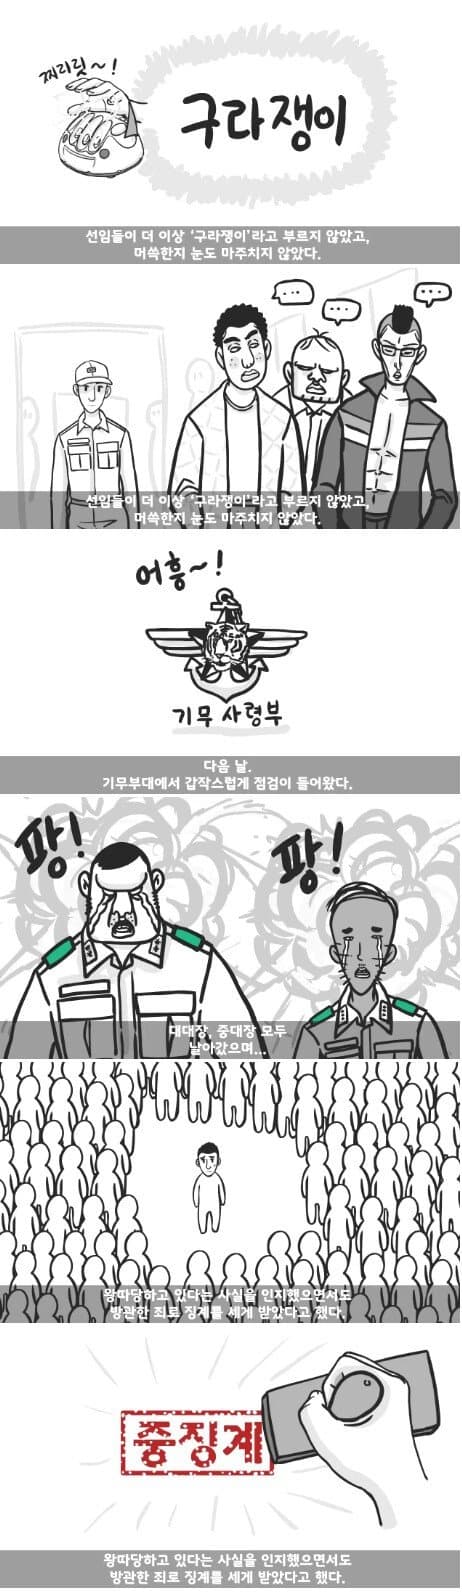 군대 4스타인 만화 18.jpg